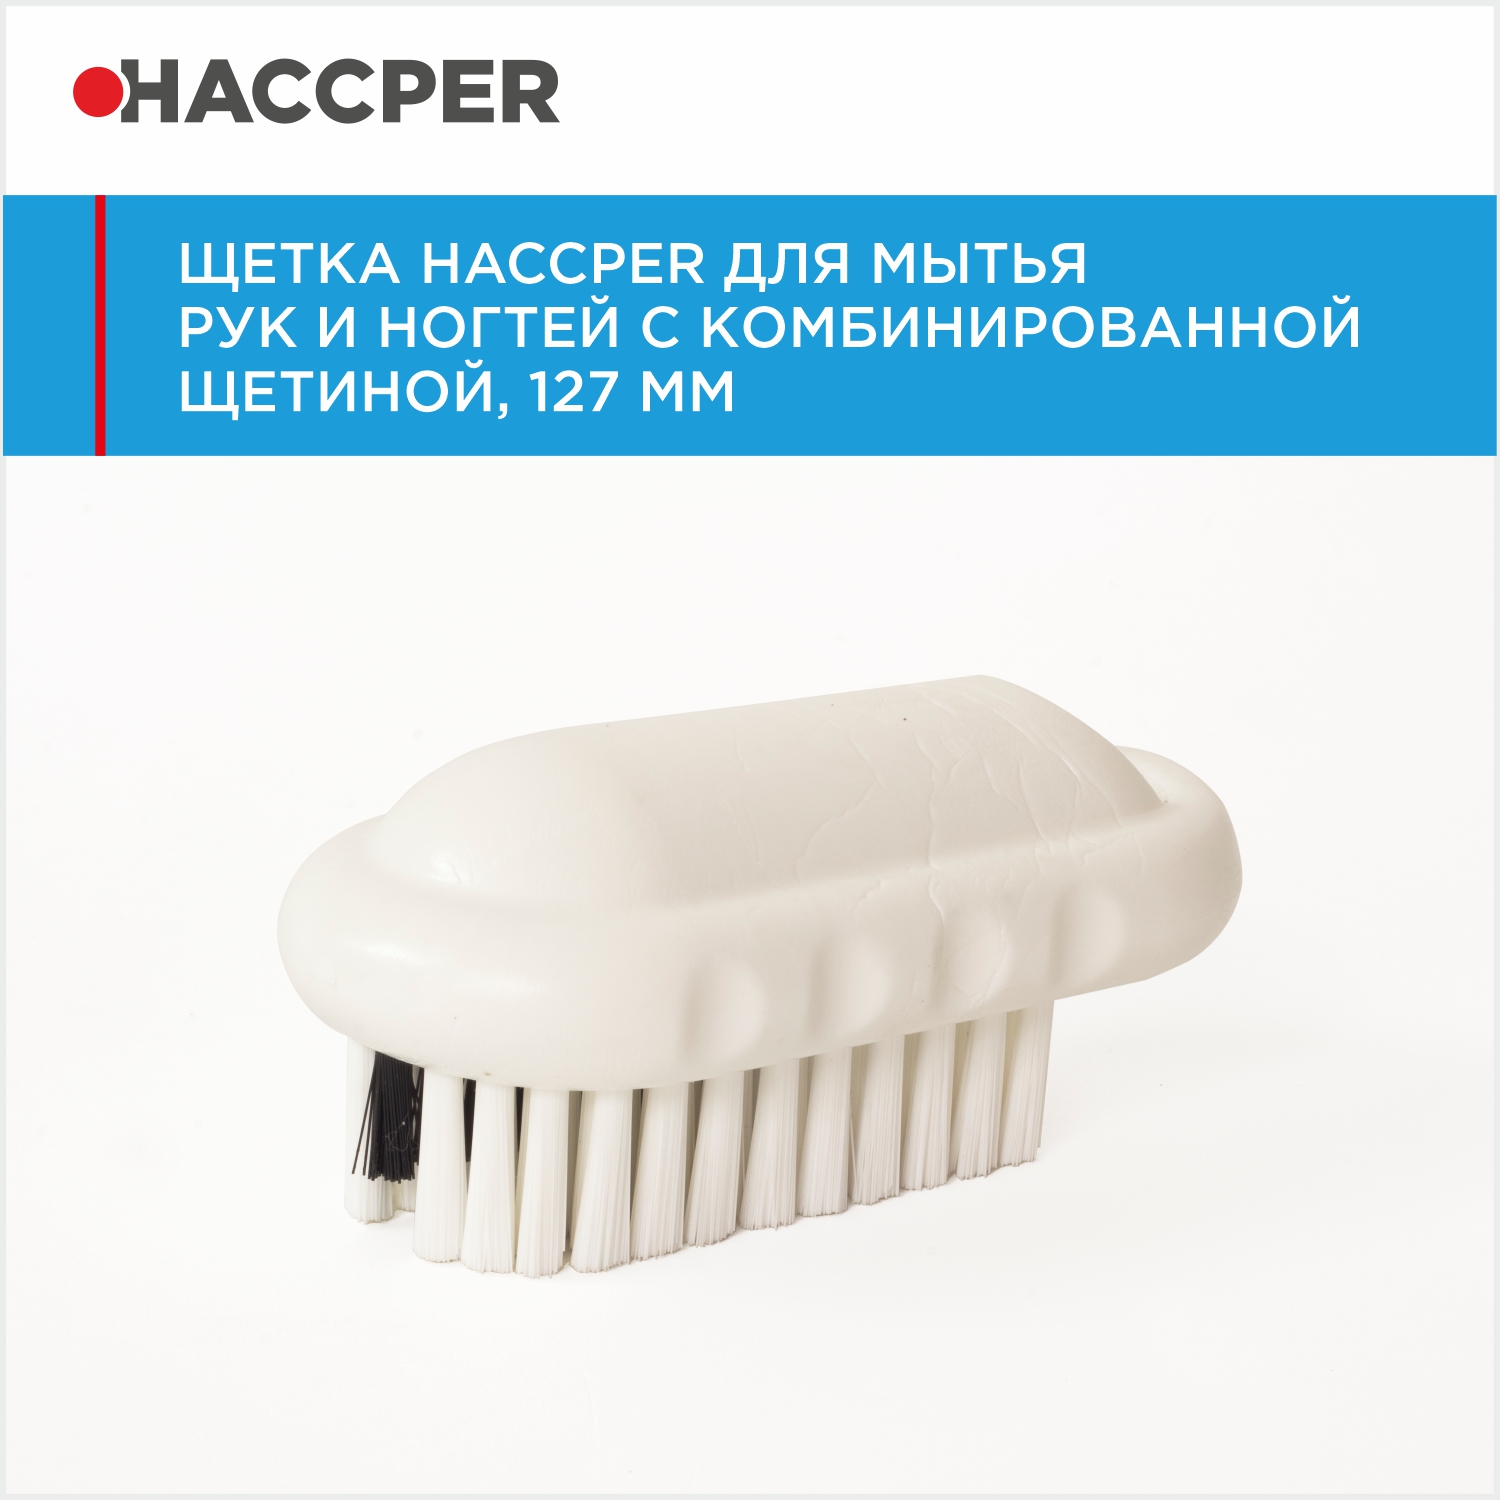 Щетка HACCPER для мытья рук и ногтей с комбинированной щетиной, 127 мм, белая